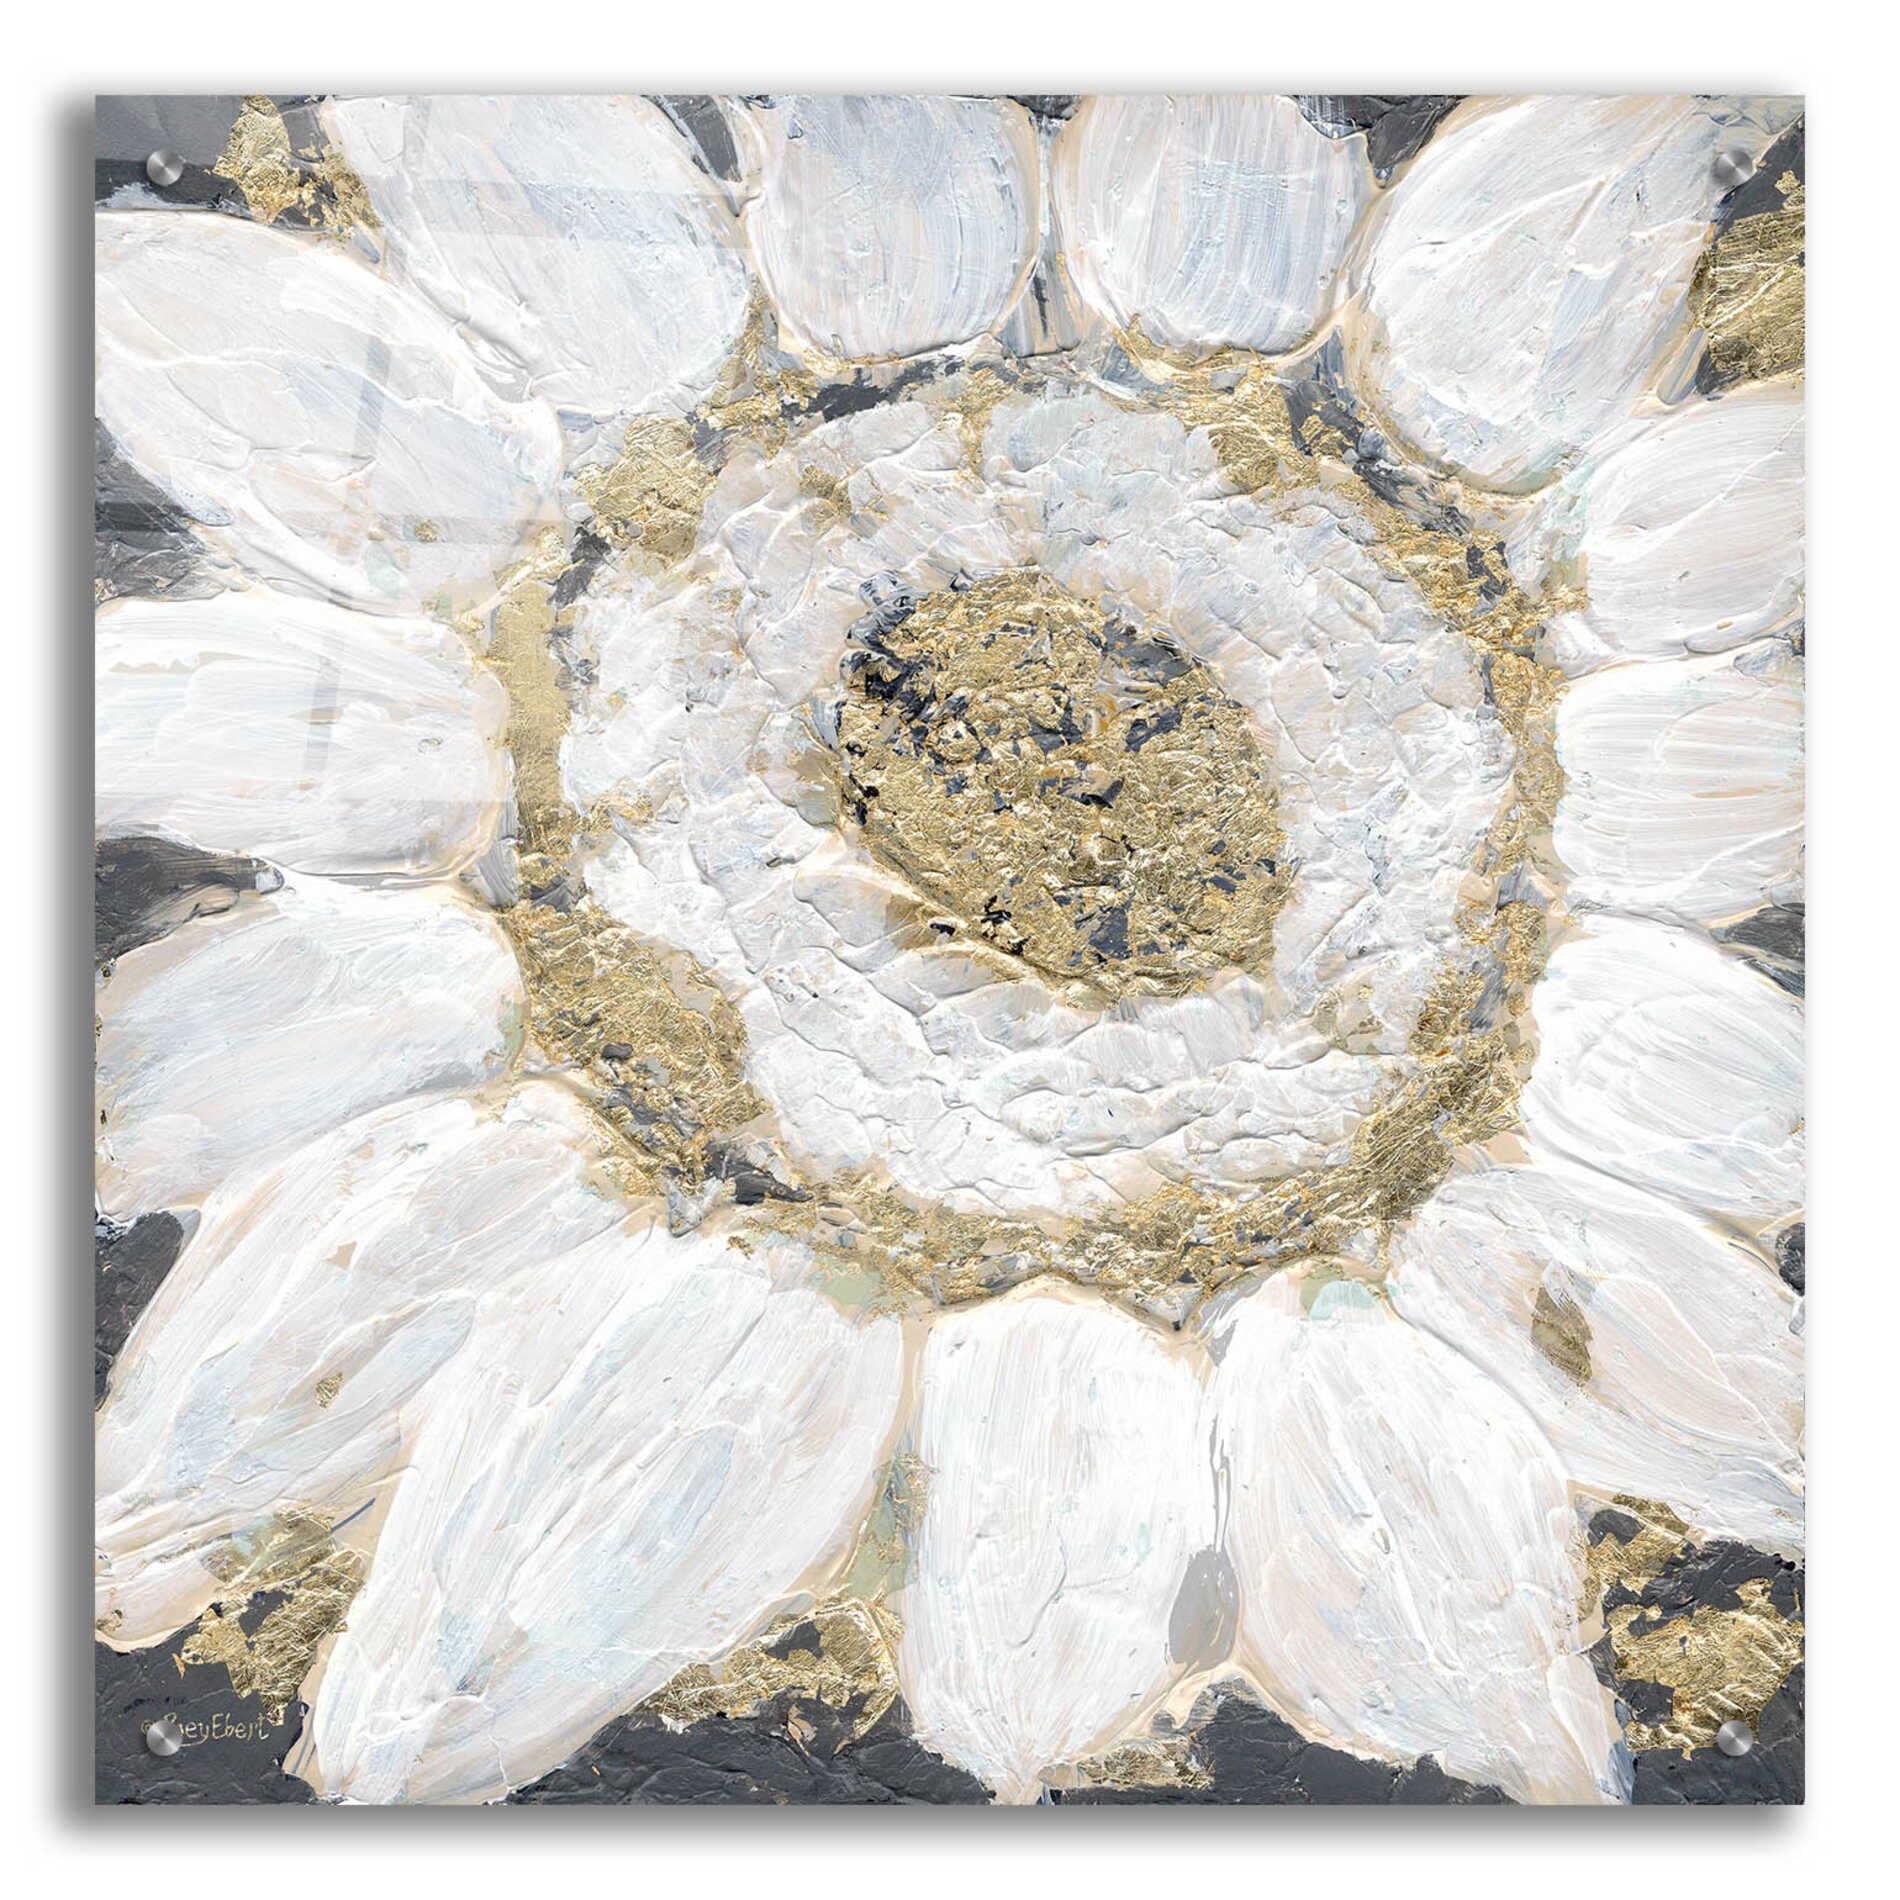 Epic Art 'Golden Sunflower' by Roey Ebert, Acrylic Glass Wall Art,24x24